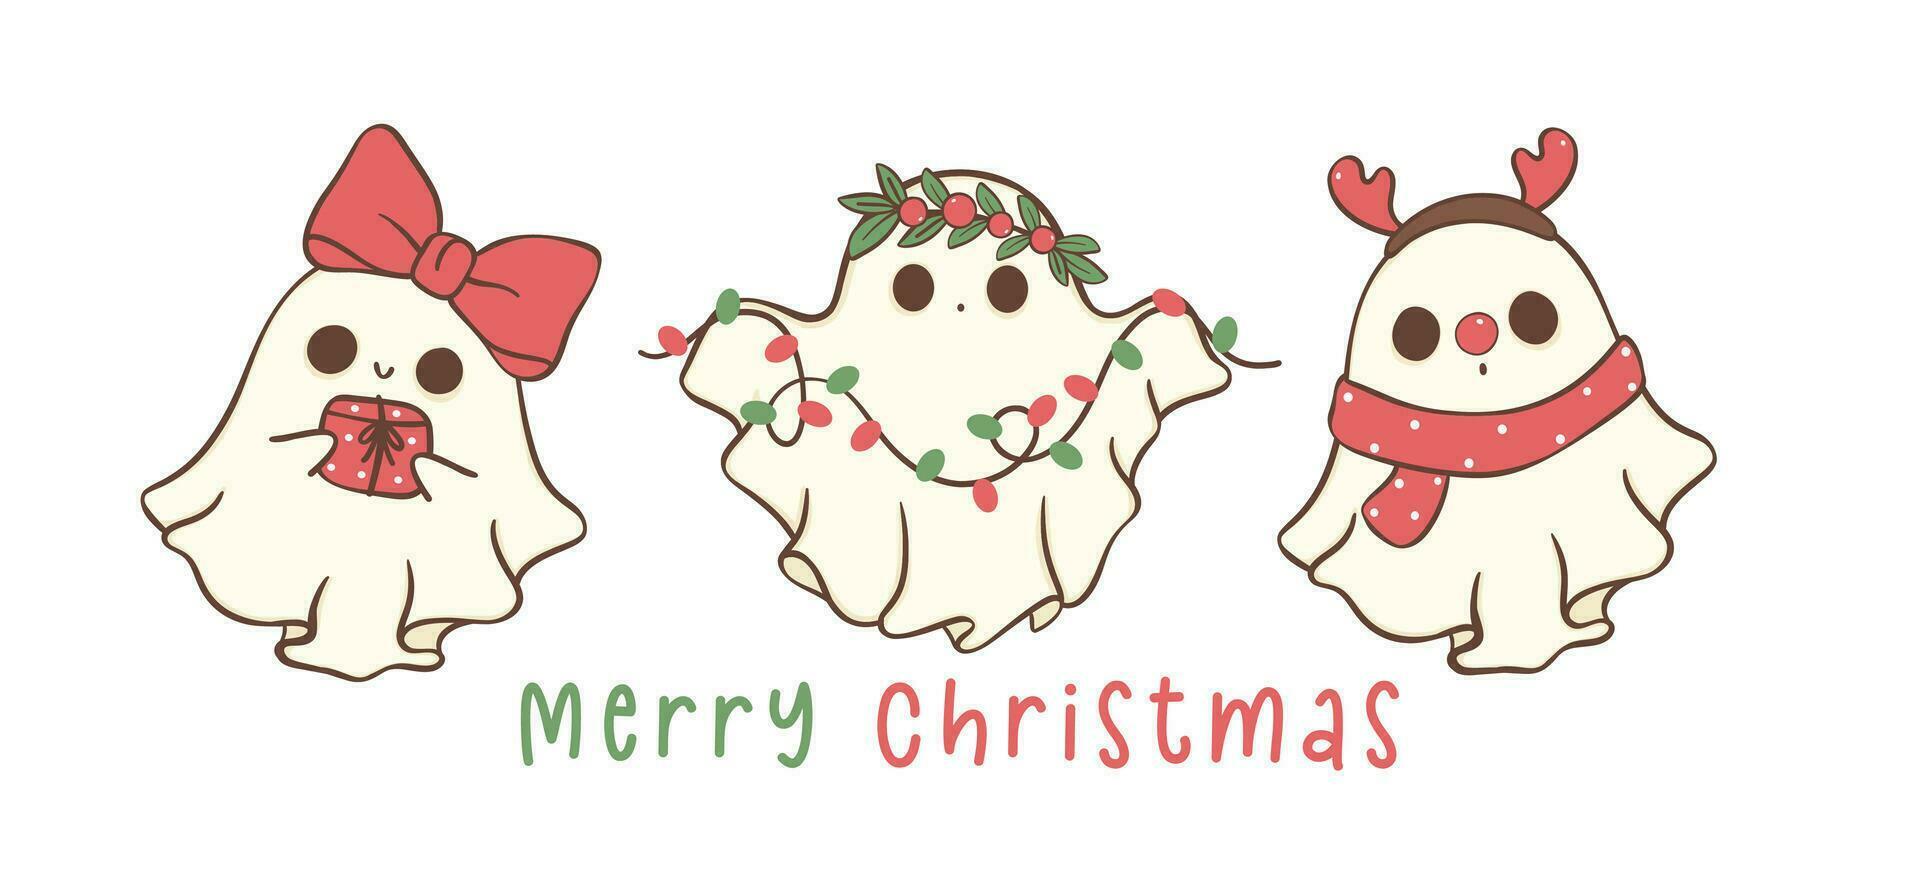 grupo de linda y kawaii Navidad fantasmas festivo saludo tarjeta bandera, fiesta dibujos animados mano dibujo con adorable pose. vector